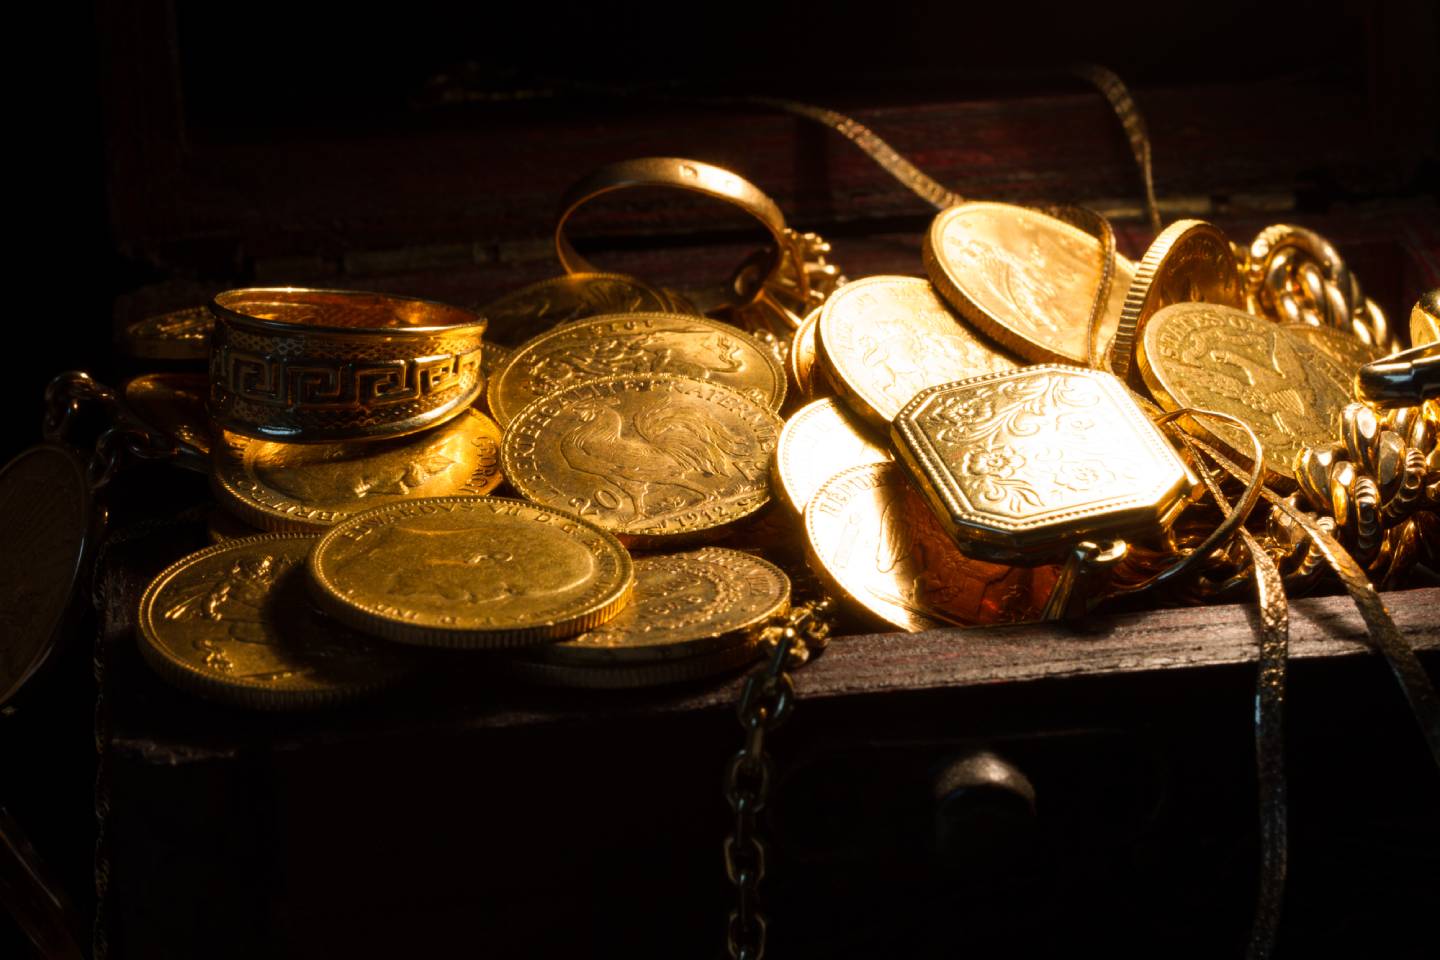 Новости мира / Интересные новости / Археологи обнаружили в Крыму золотые монеты времен Александра Македонского